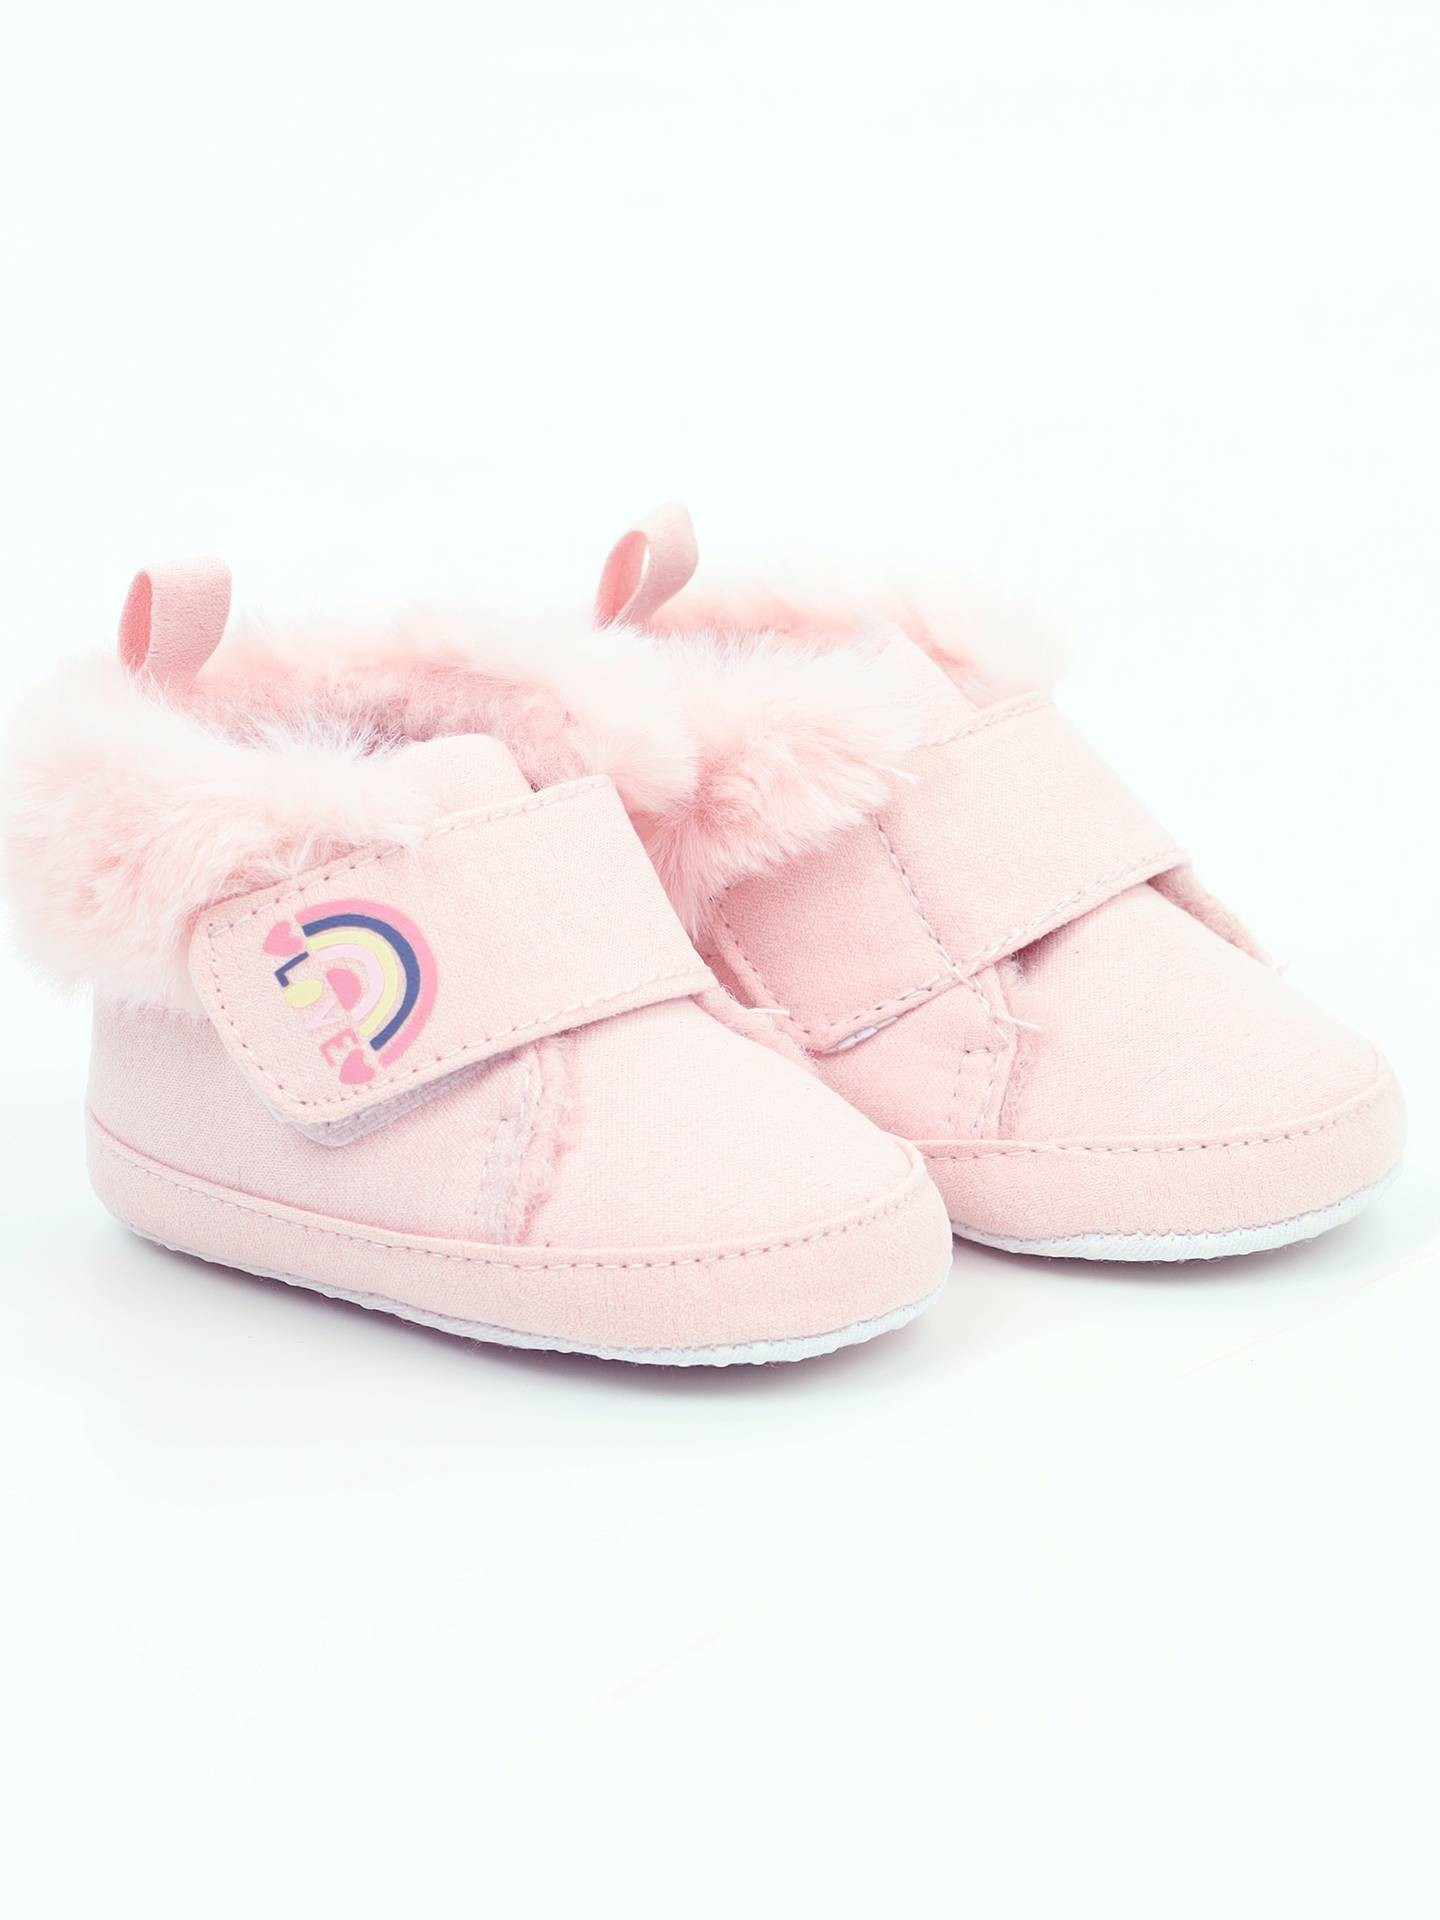 Yoclub Dětská dívčí obuv OBO-0019G-0500 Light Pink 6-12 měsíců